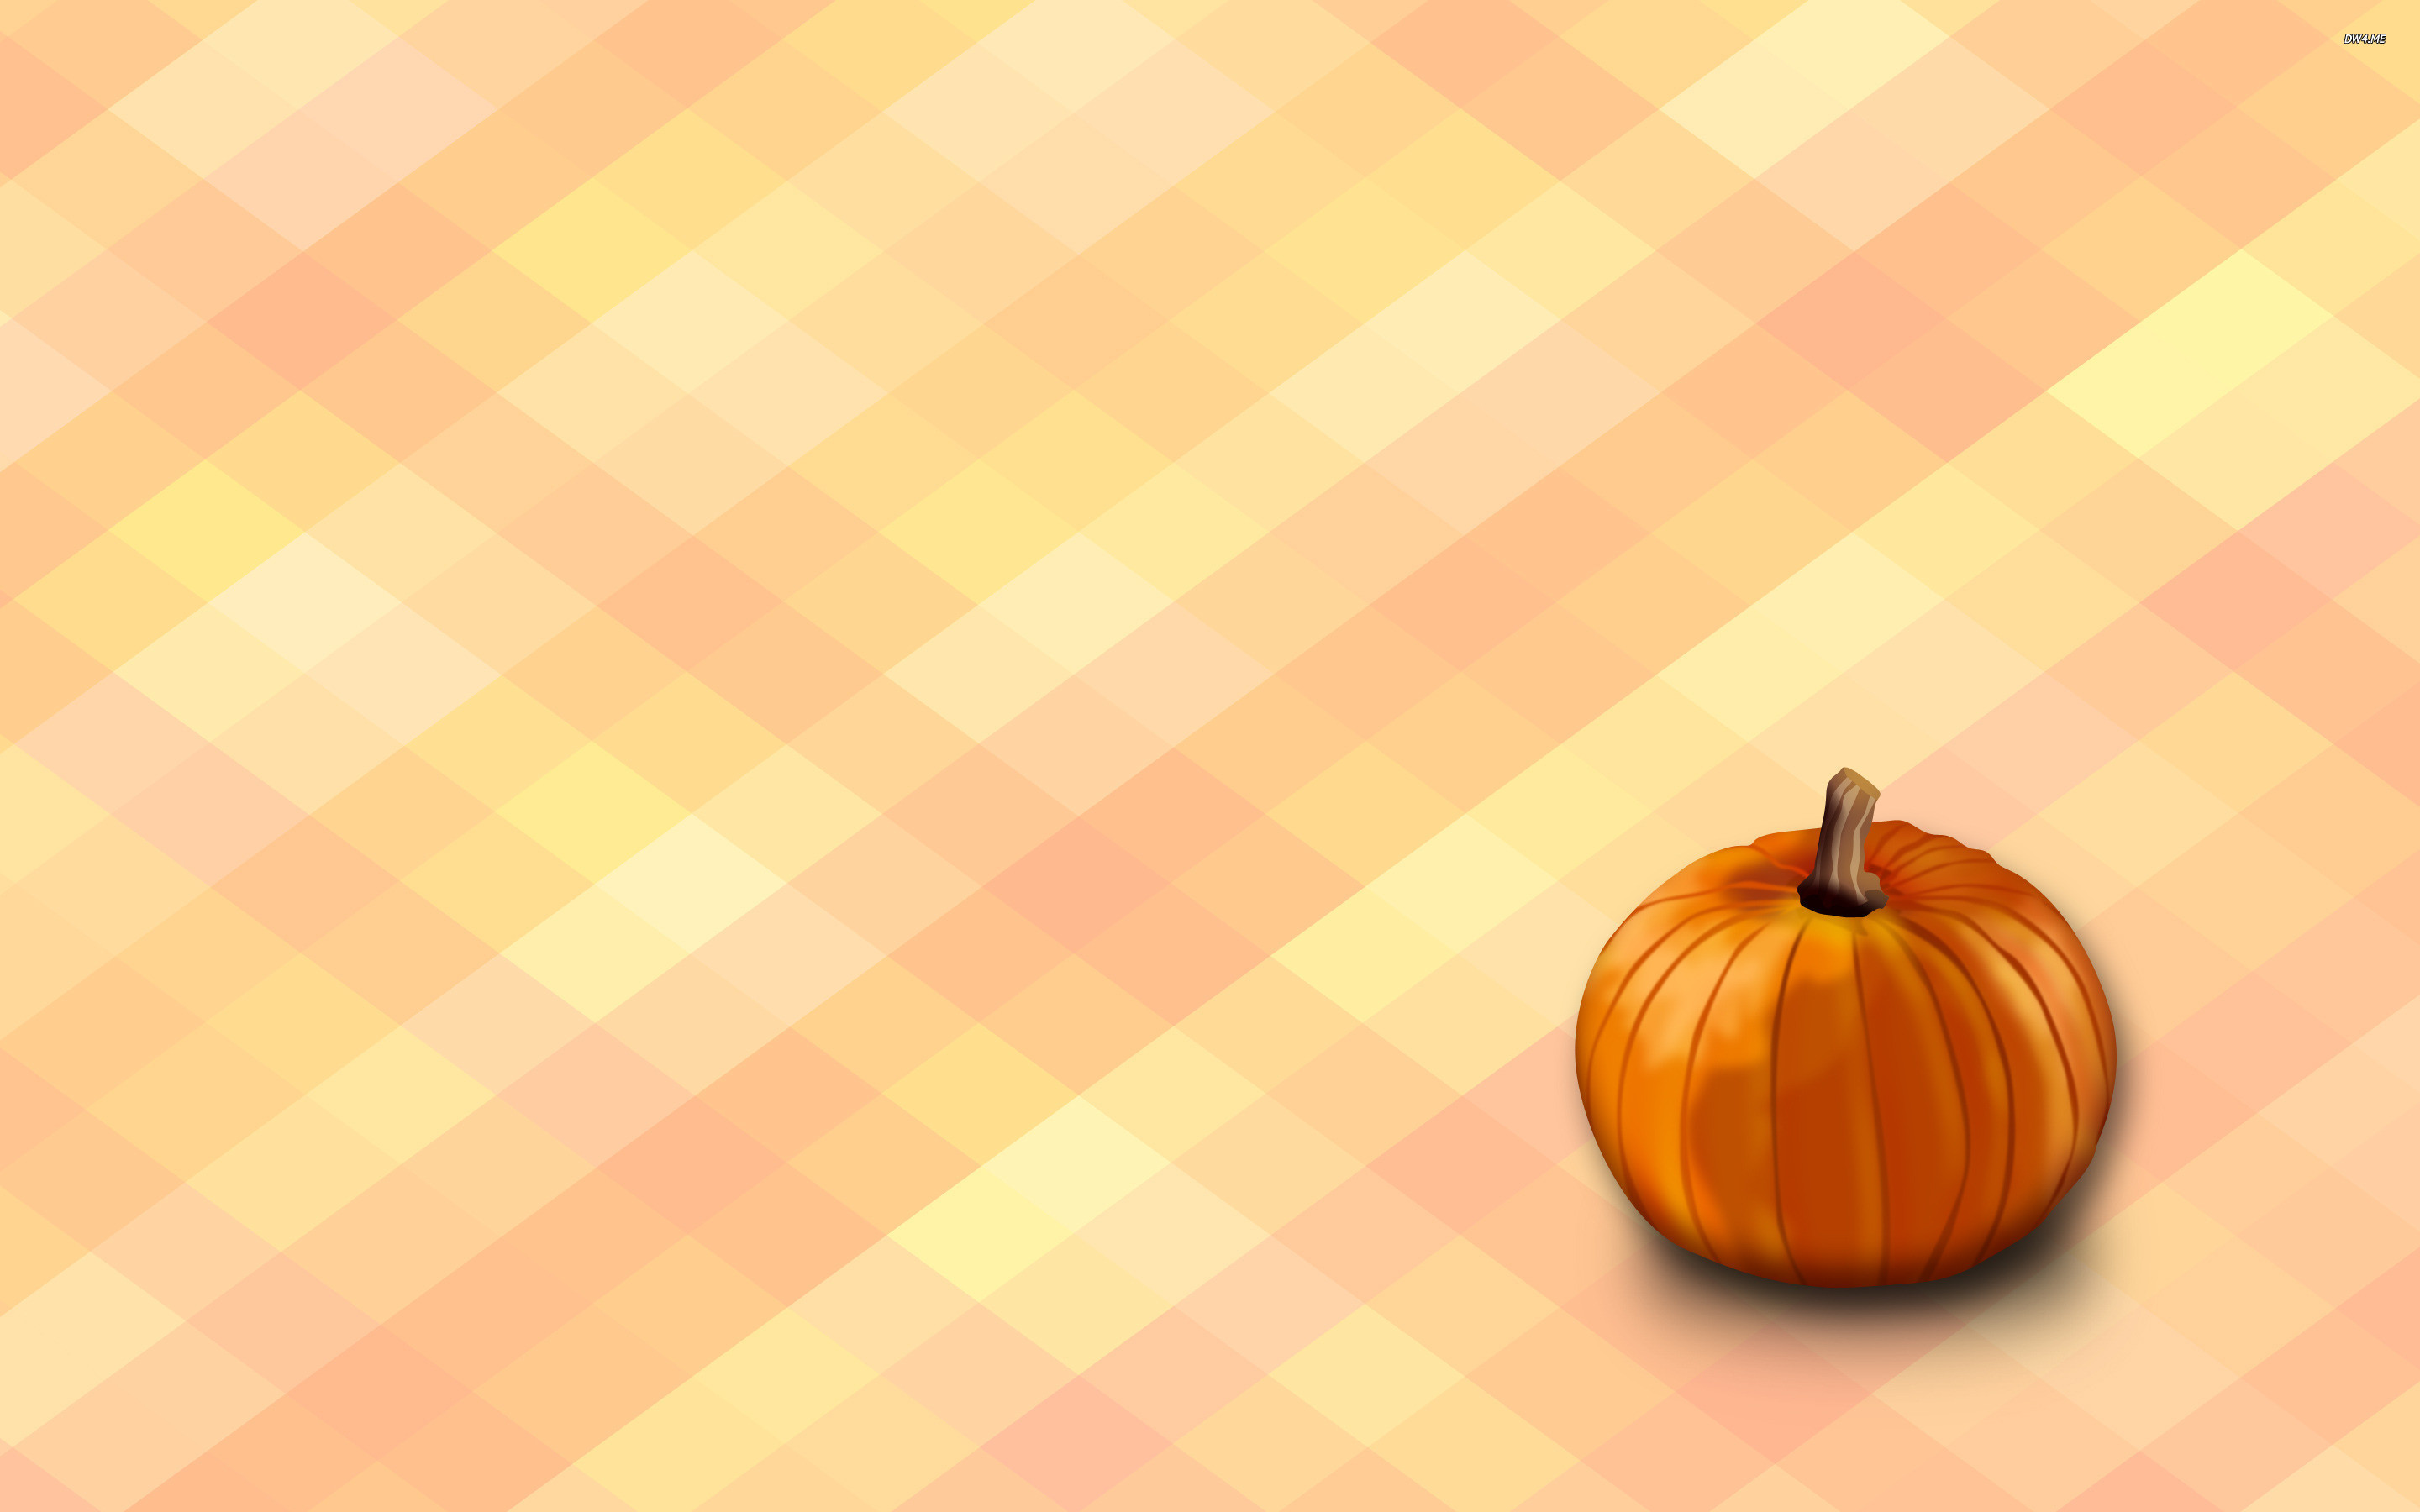 2880x1800 Pumpkin Digital Art desktop wallpaper, Autumn wallpaper, Fall Pumpkin  wallpaper - Digital Art no.